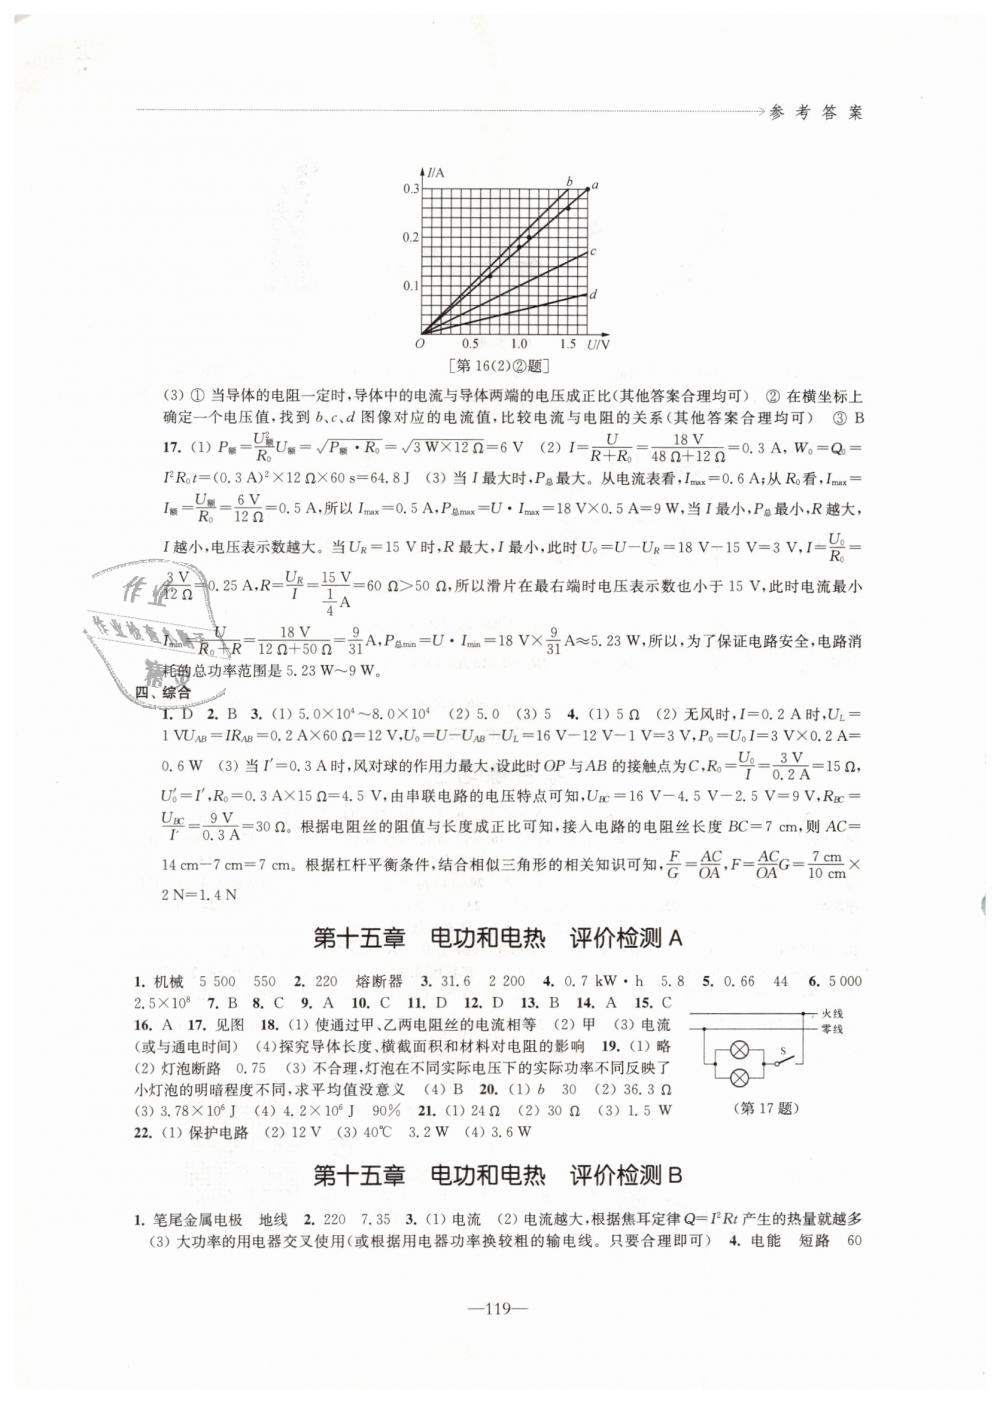 2018年江苏省中考试题选粹 - 第5页